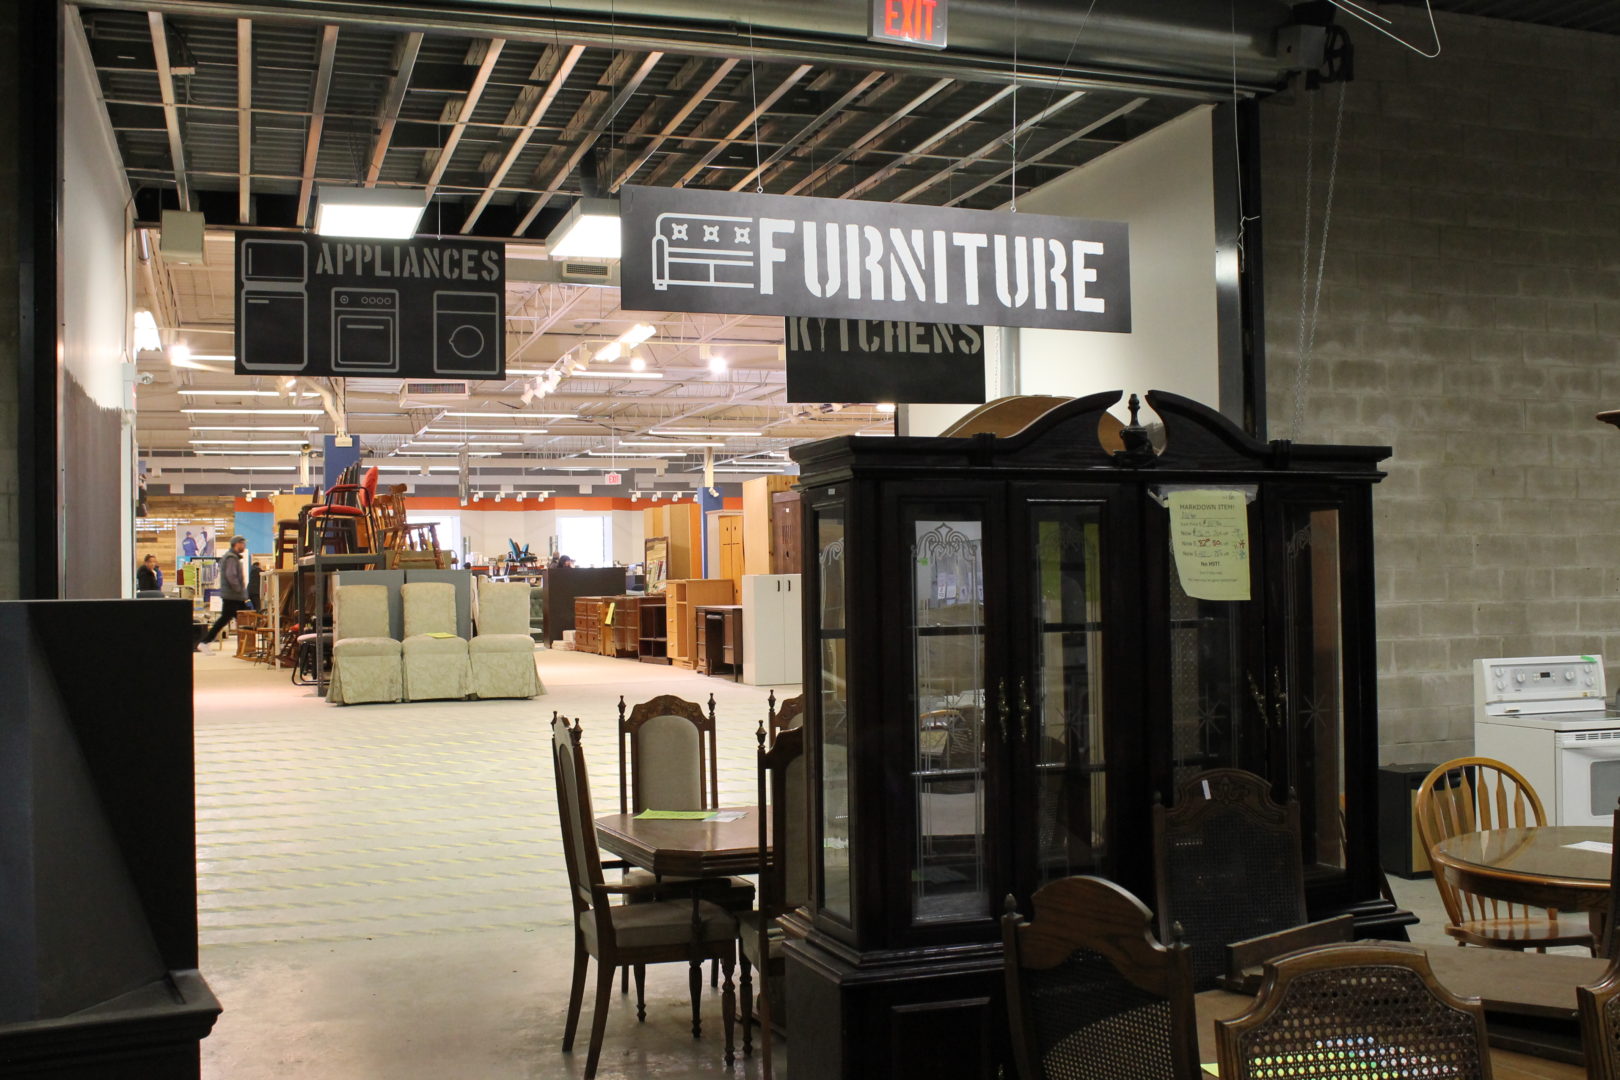 Furniture in a Habitat ReStore.